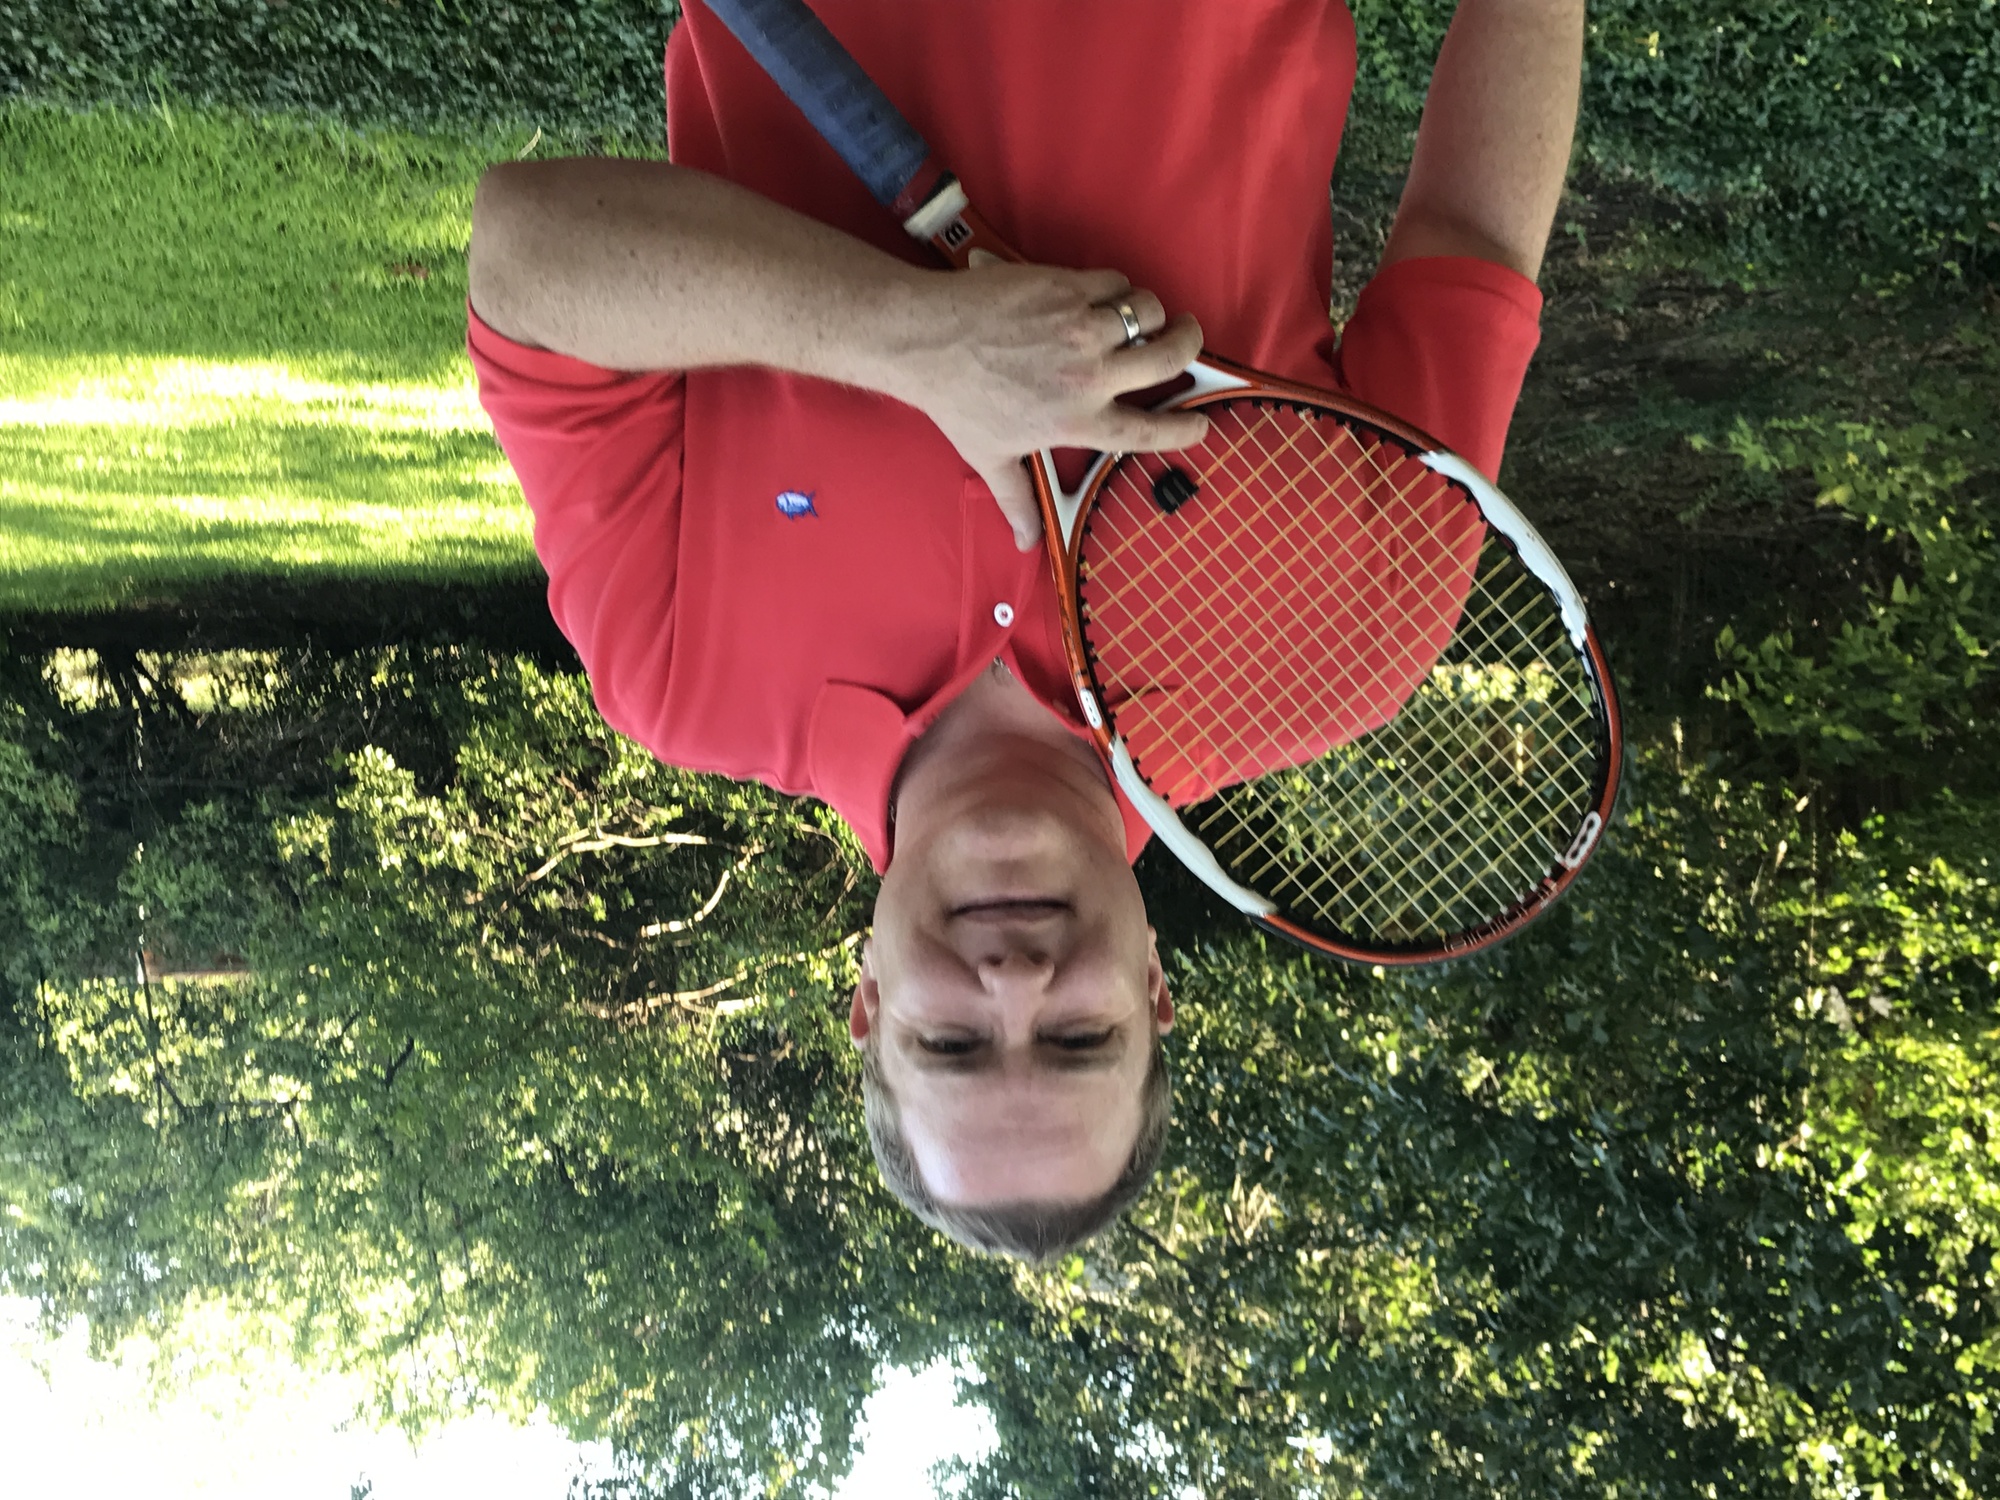 Will H. teaches tennis lessons in Dallas, TX